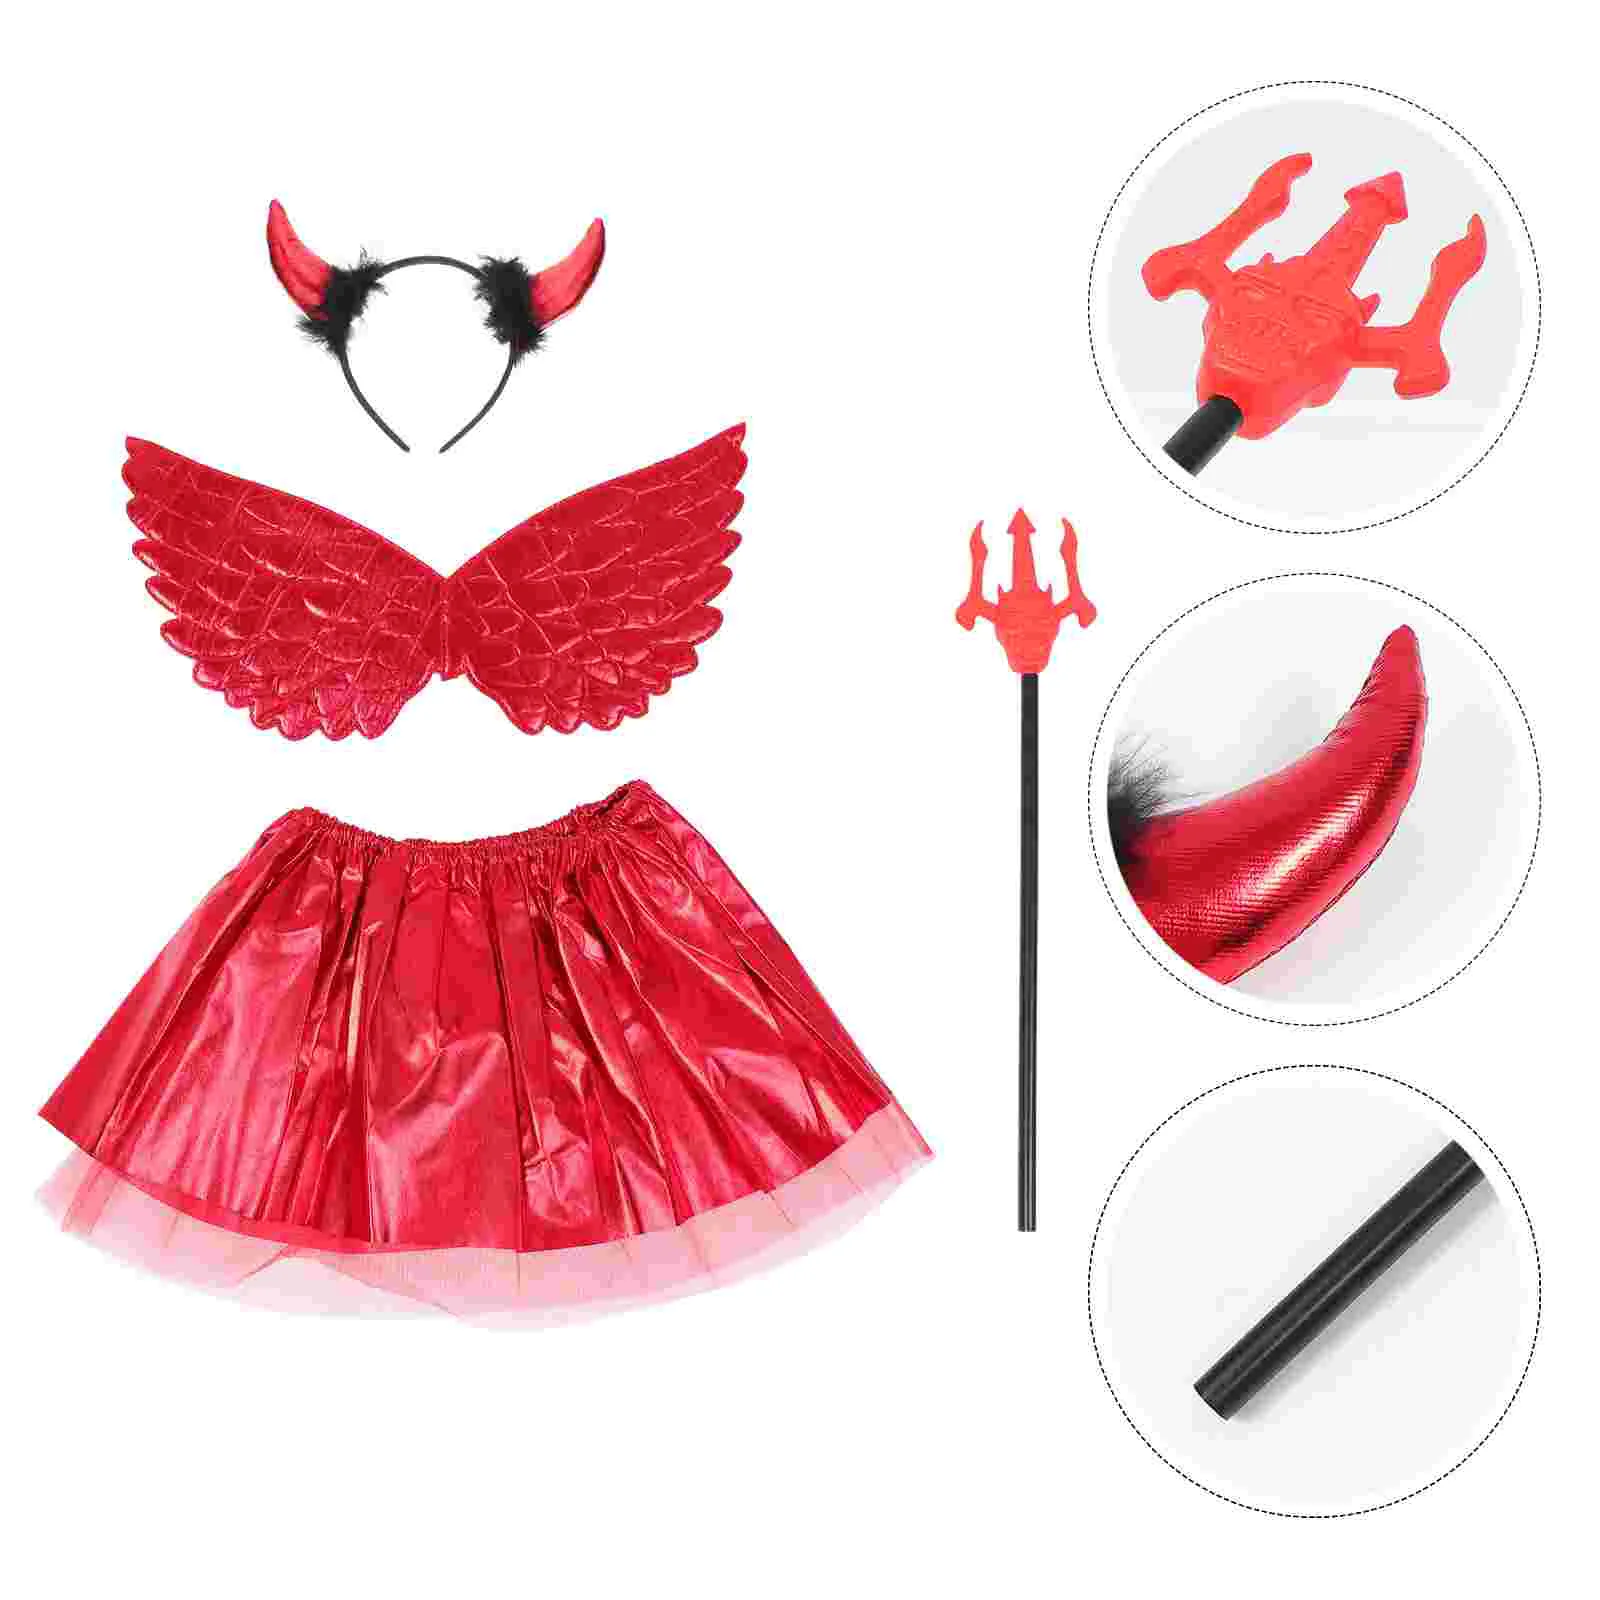 

Accessories Demon Wings Set Girl Child Kids Halloween Costume Fancy Dress Plastic Cosplay Prop